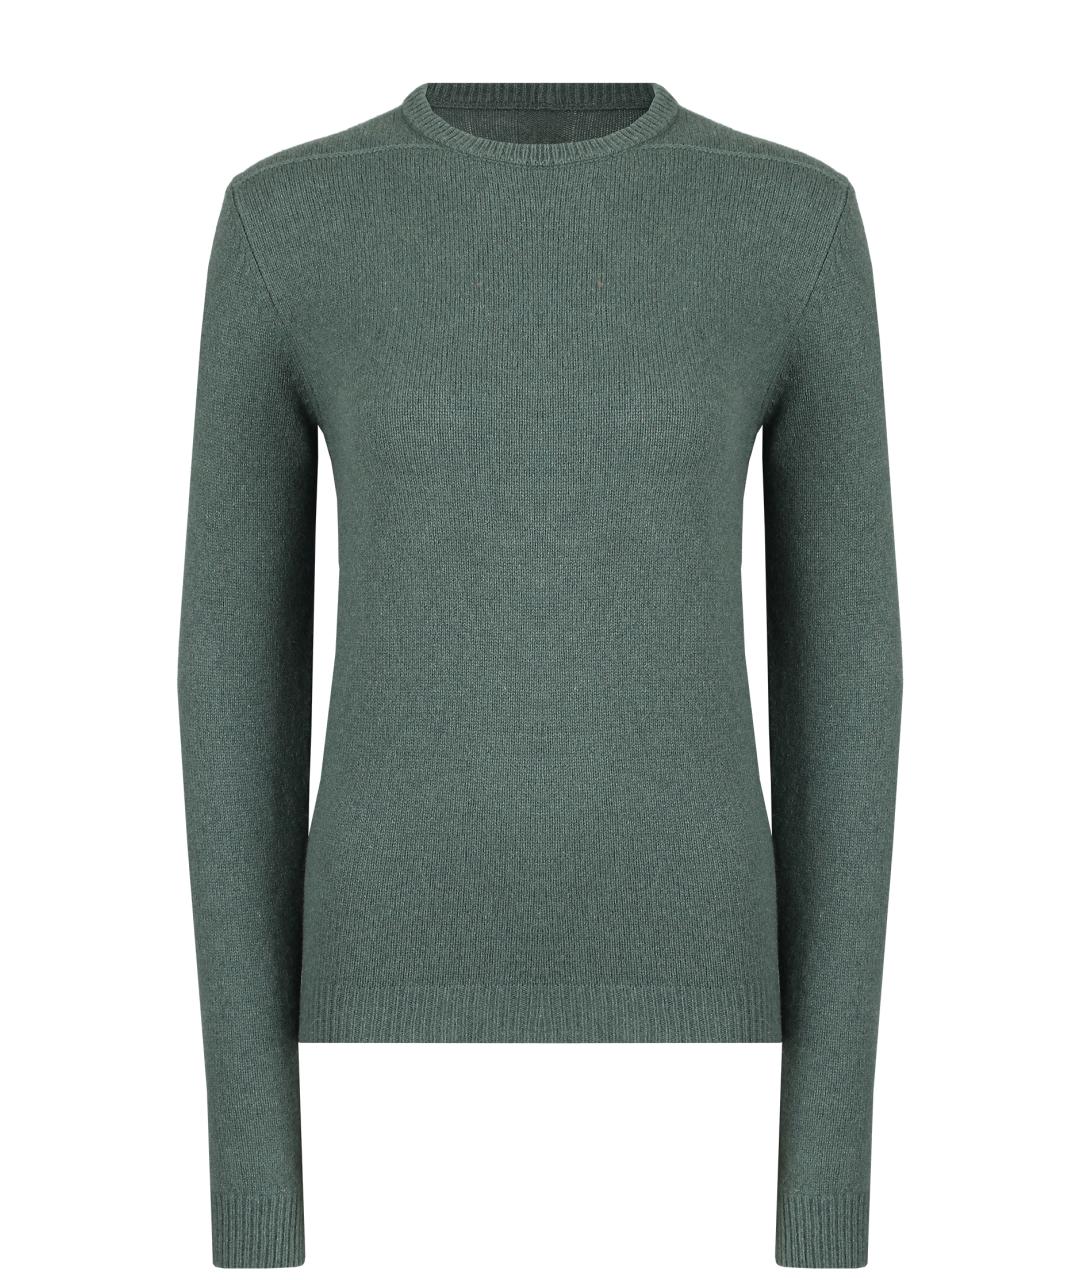 RICK OWENS Зеленый кашемировый джемпер / свитер, фото 1